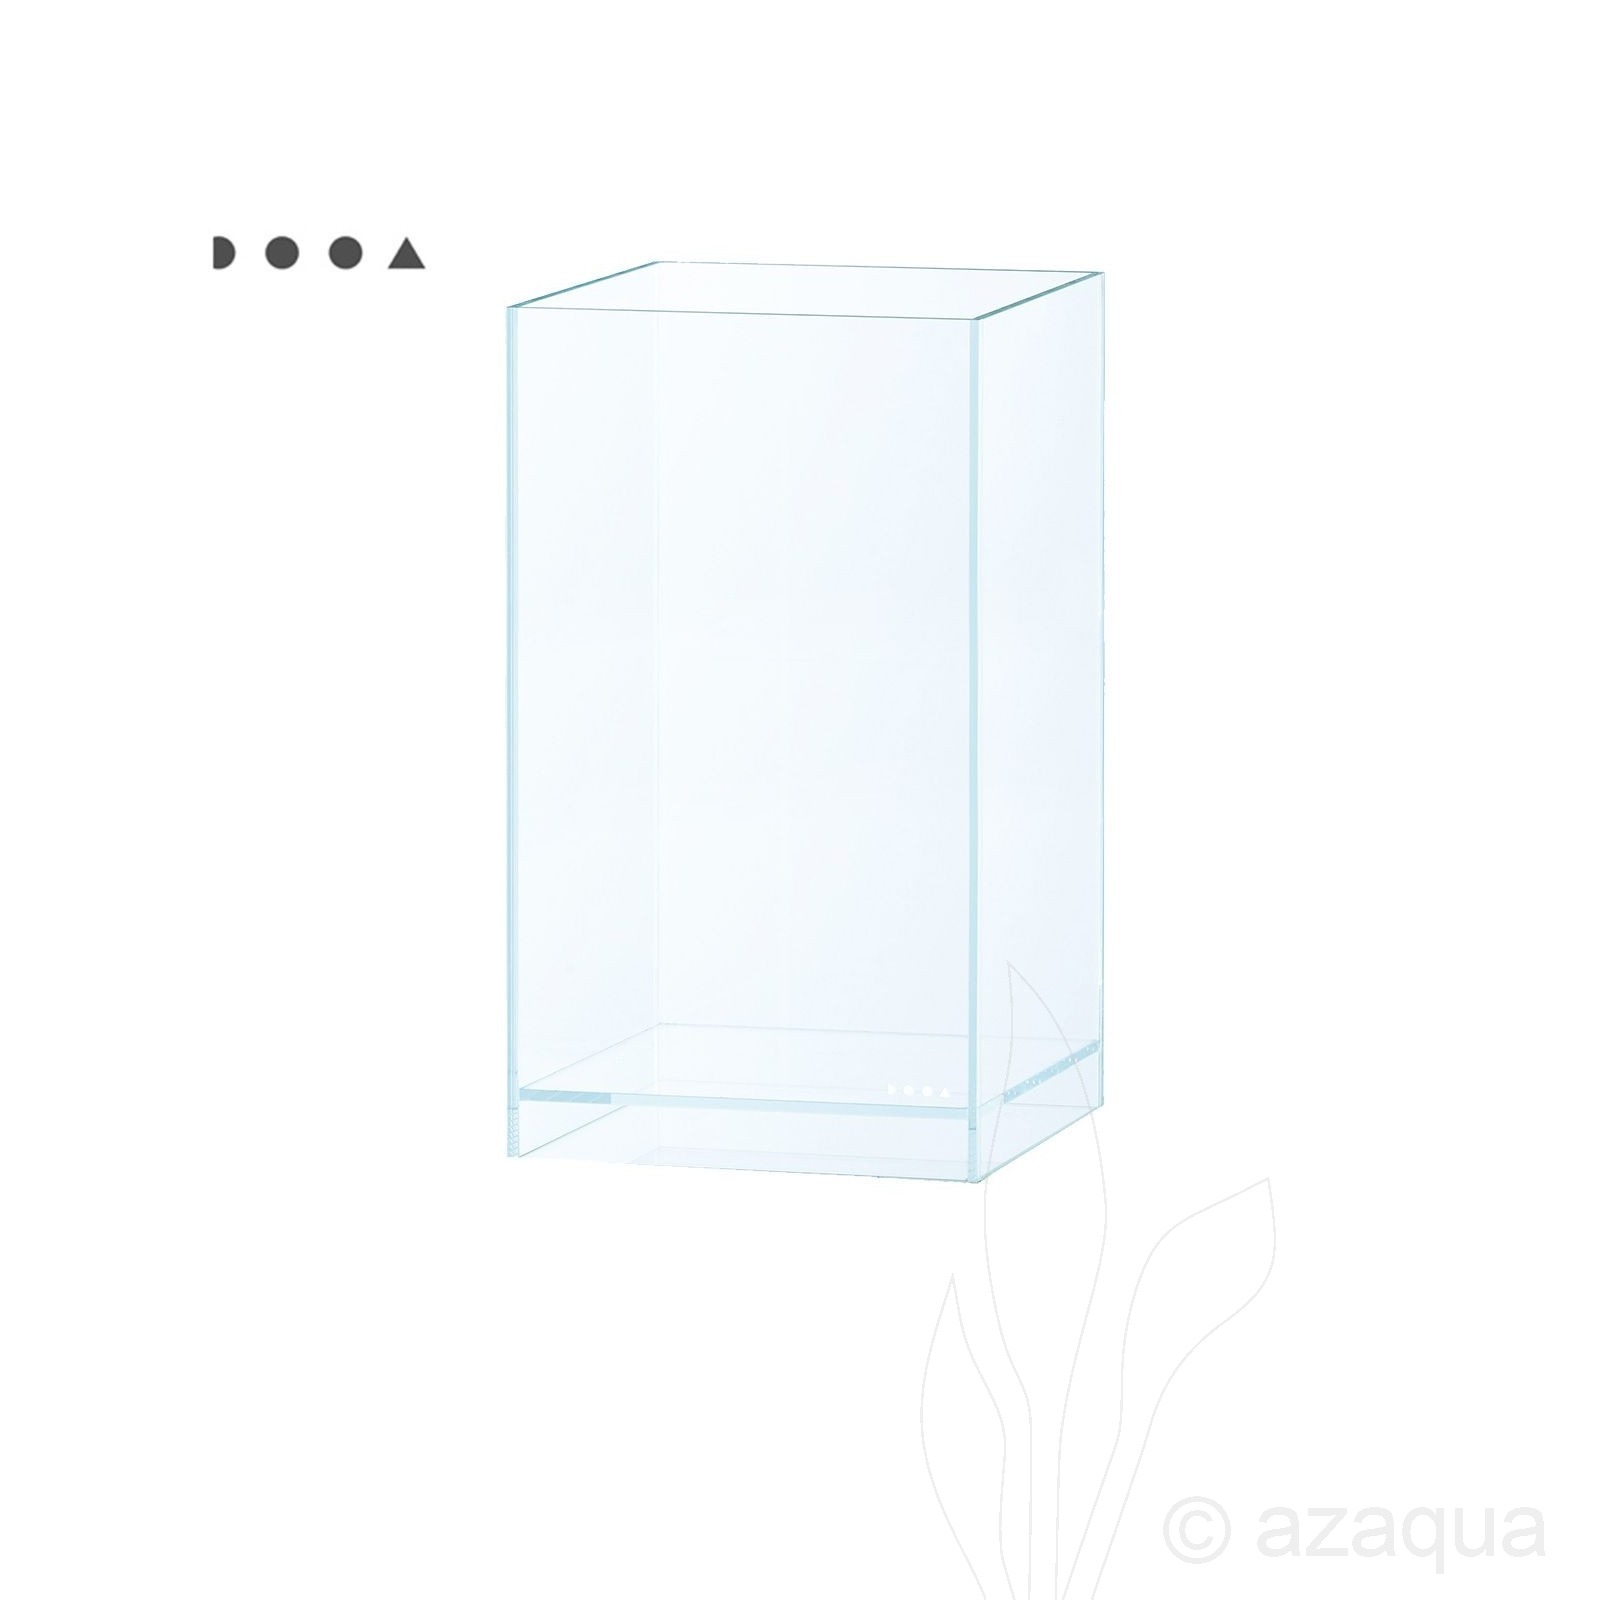 DOOA, Neo Glass, AIR-W20 X D20 X H35 (cm)